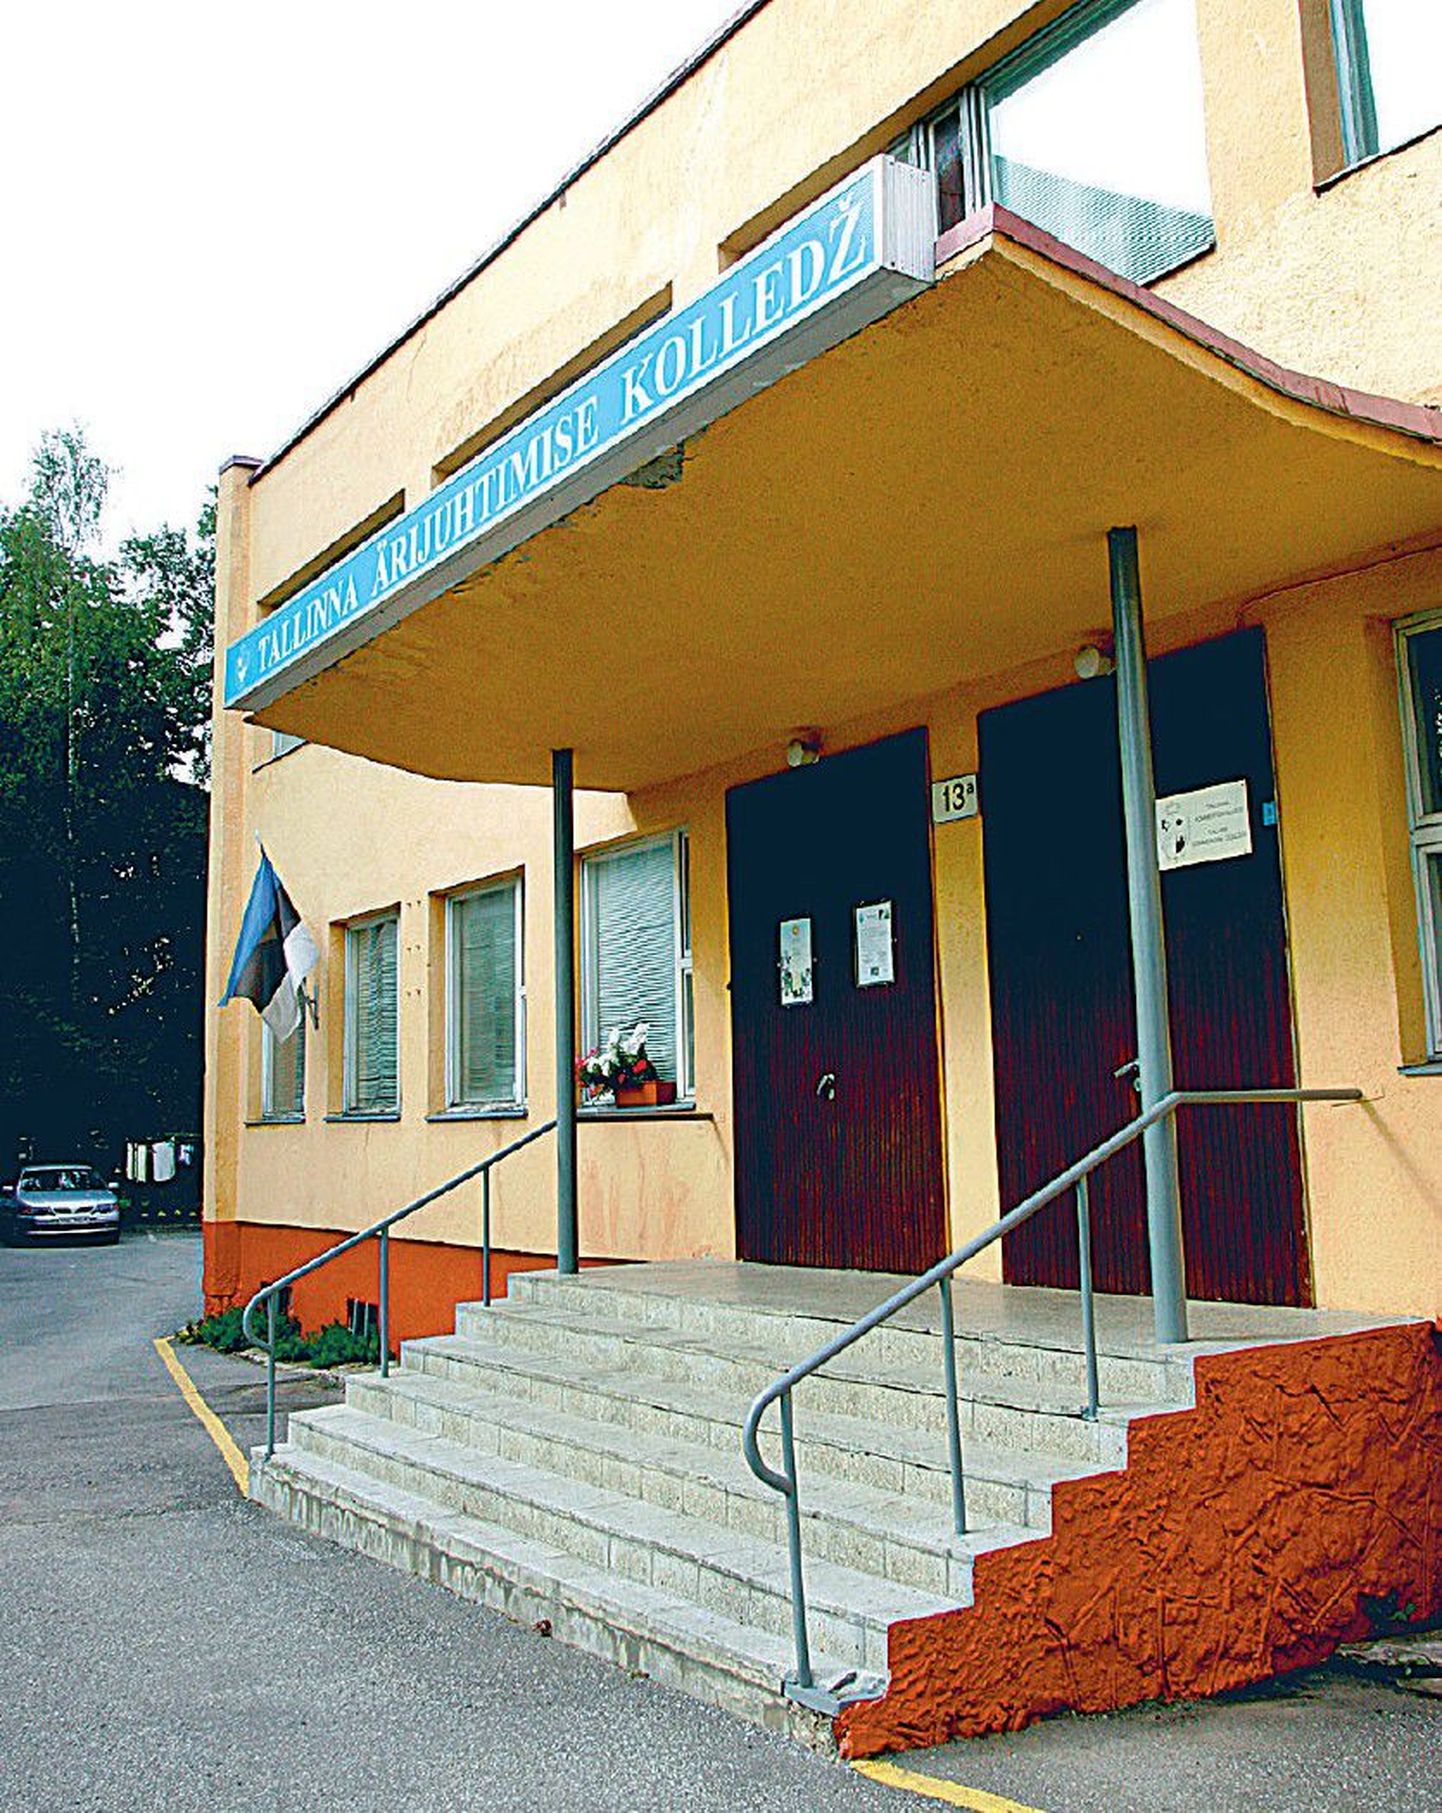 Таллиннский колледж управления бизнесом действовал 19 лет, но в 2012 году будет закрыт, поскольку его единственная учебная программа не соответствует критериям качества.